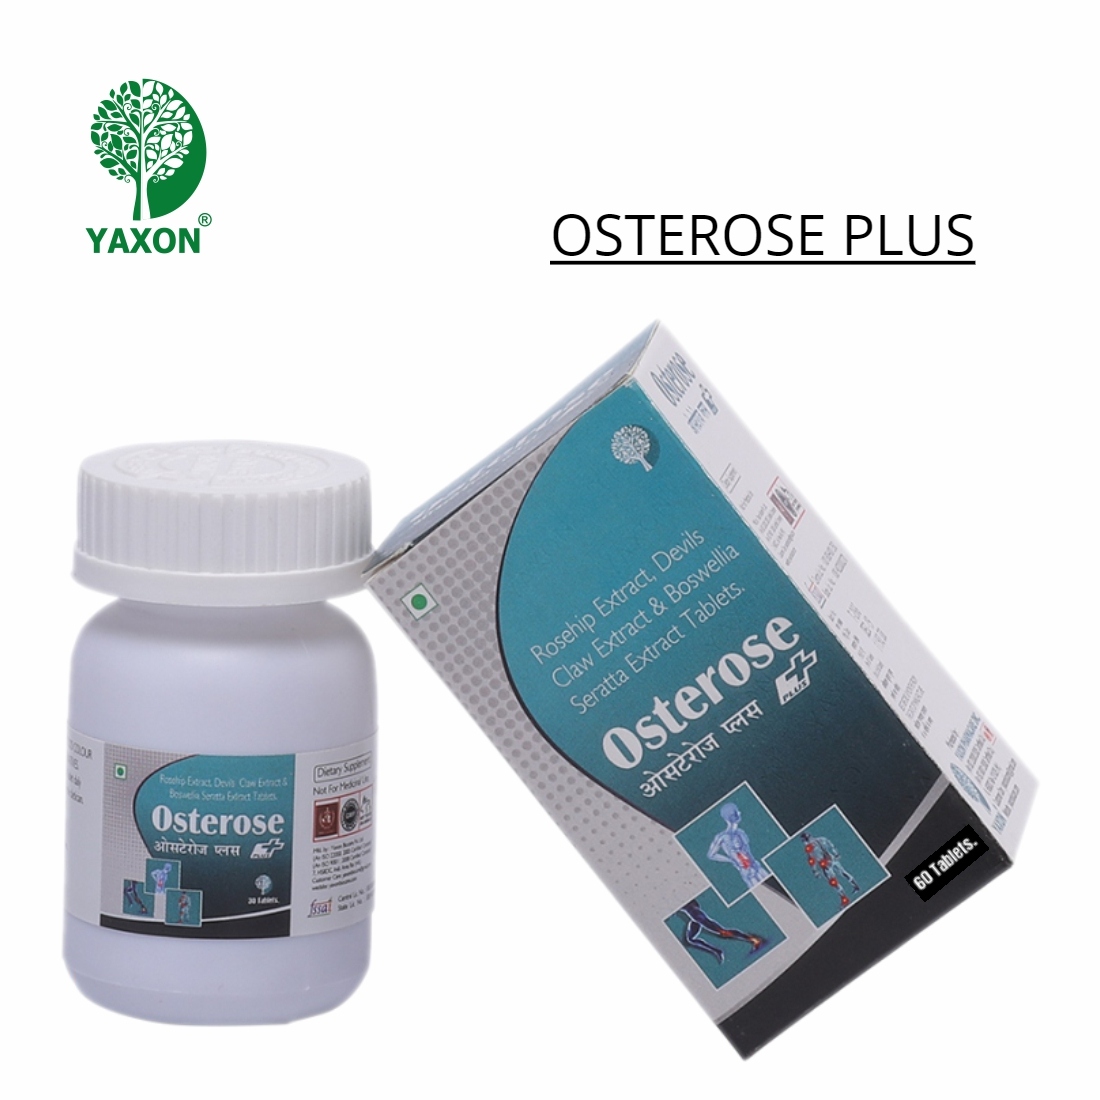 YAXON OSTEROSE PLUS 60 Tablets Bottle